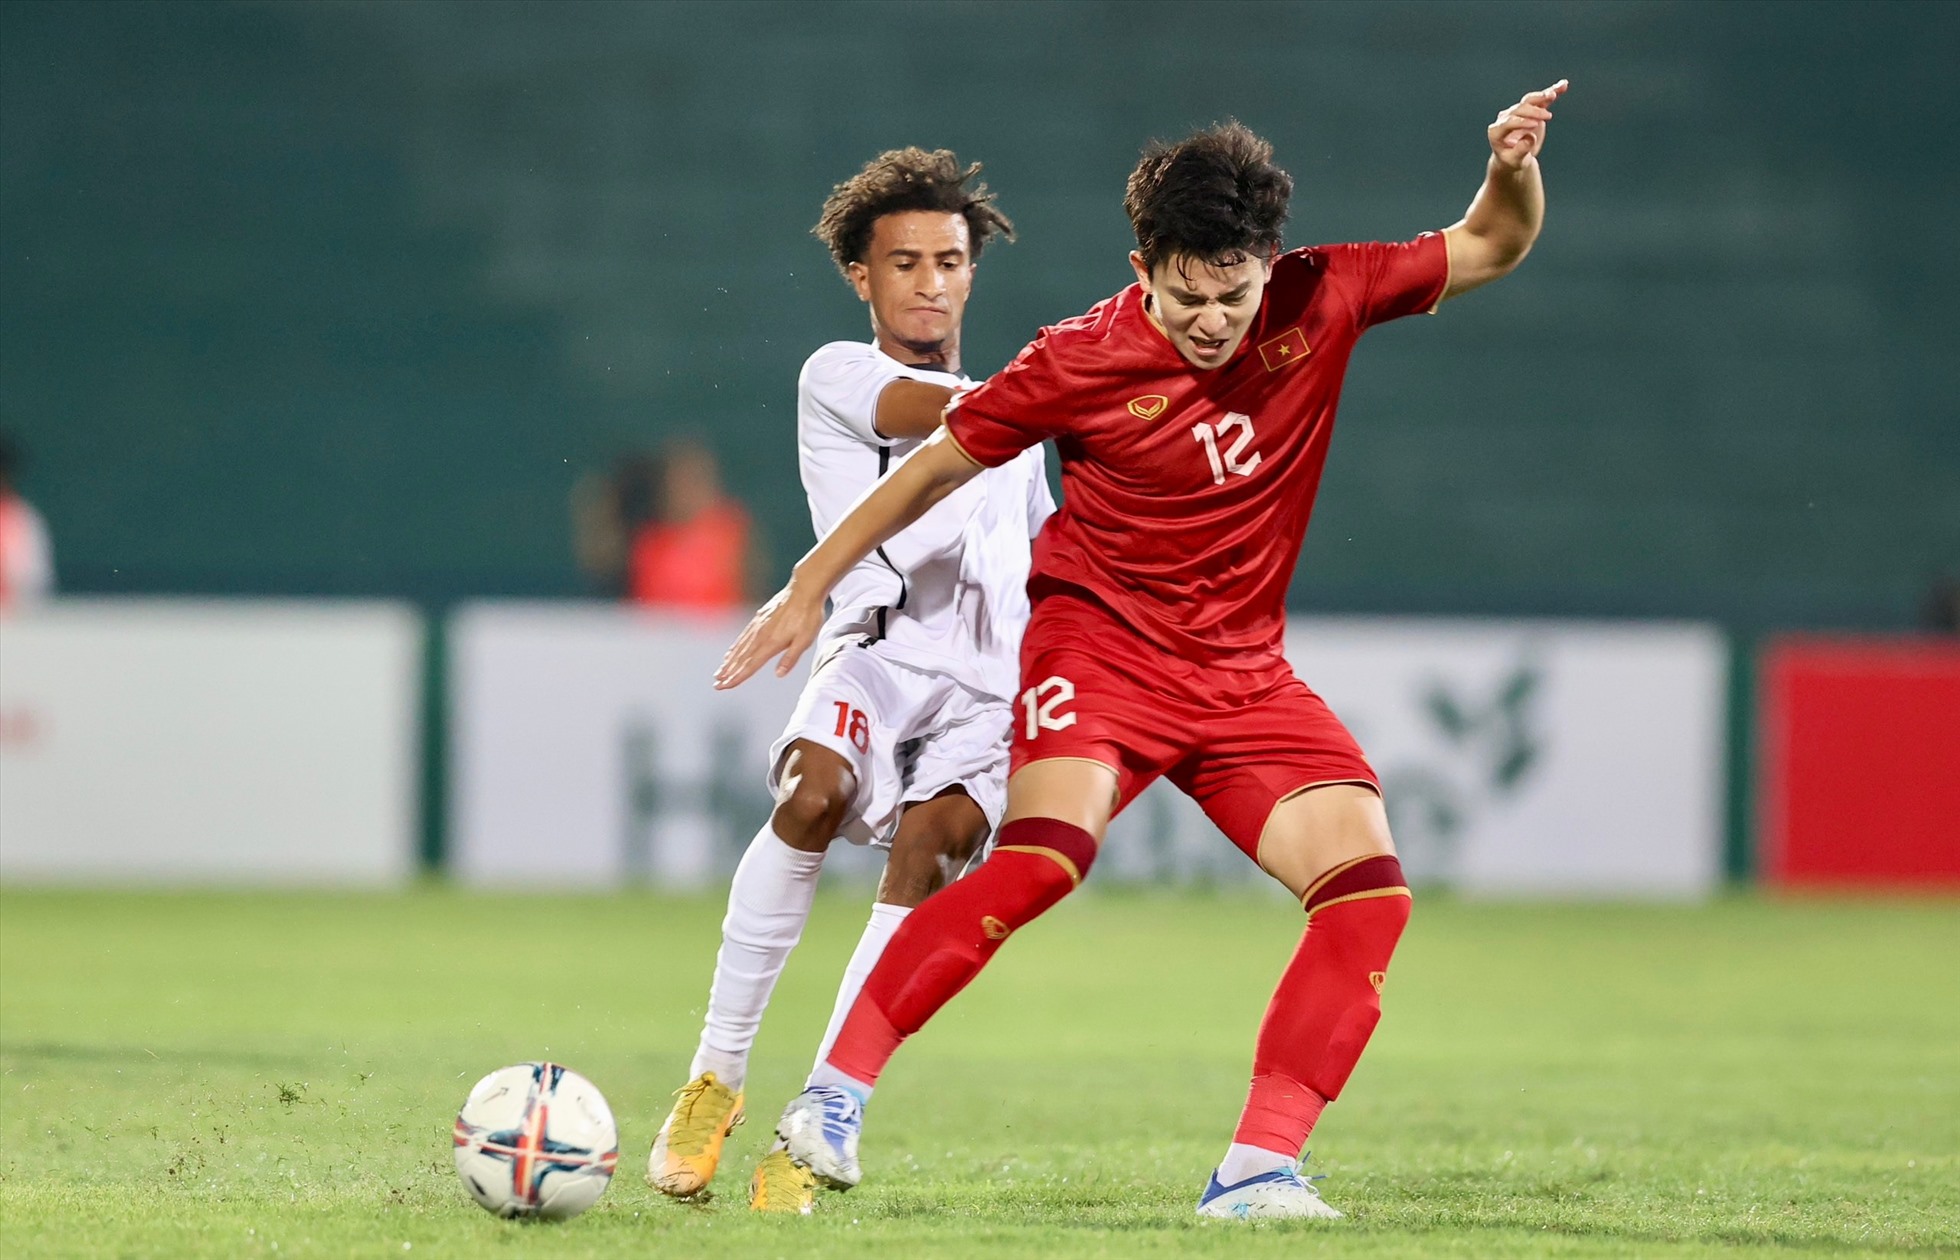 Trận gặp U23 Singapore là cơ hội để các cầu thủ U23 Việt Nam ra sân nhiều hơn. Ảnh: Hoàng Linh